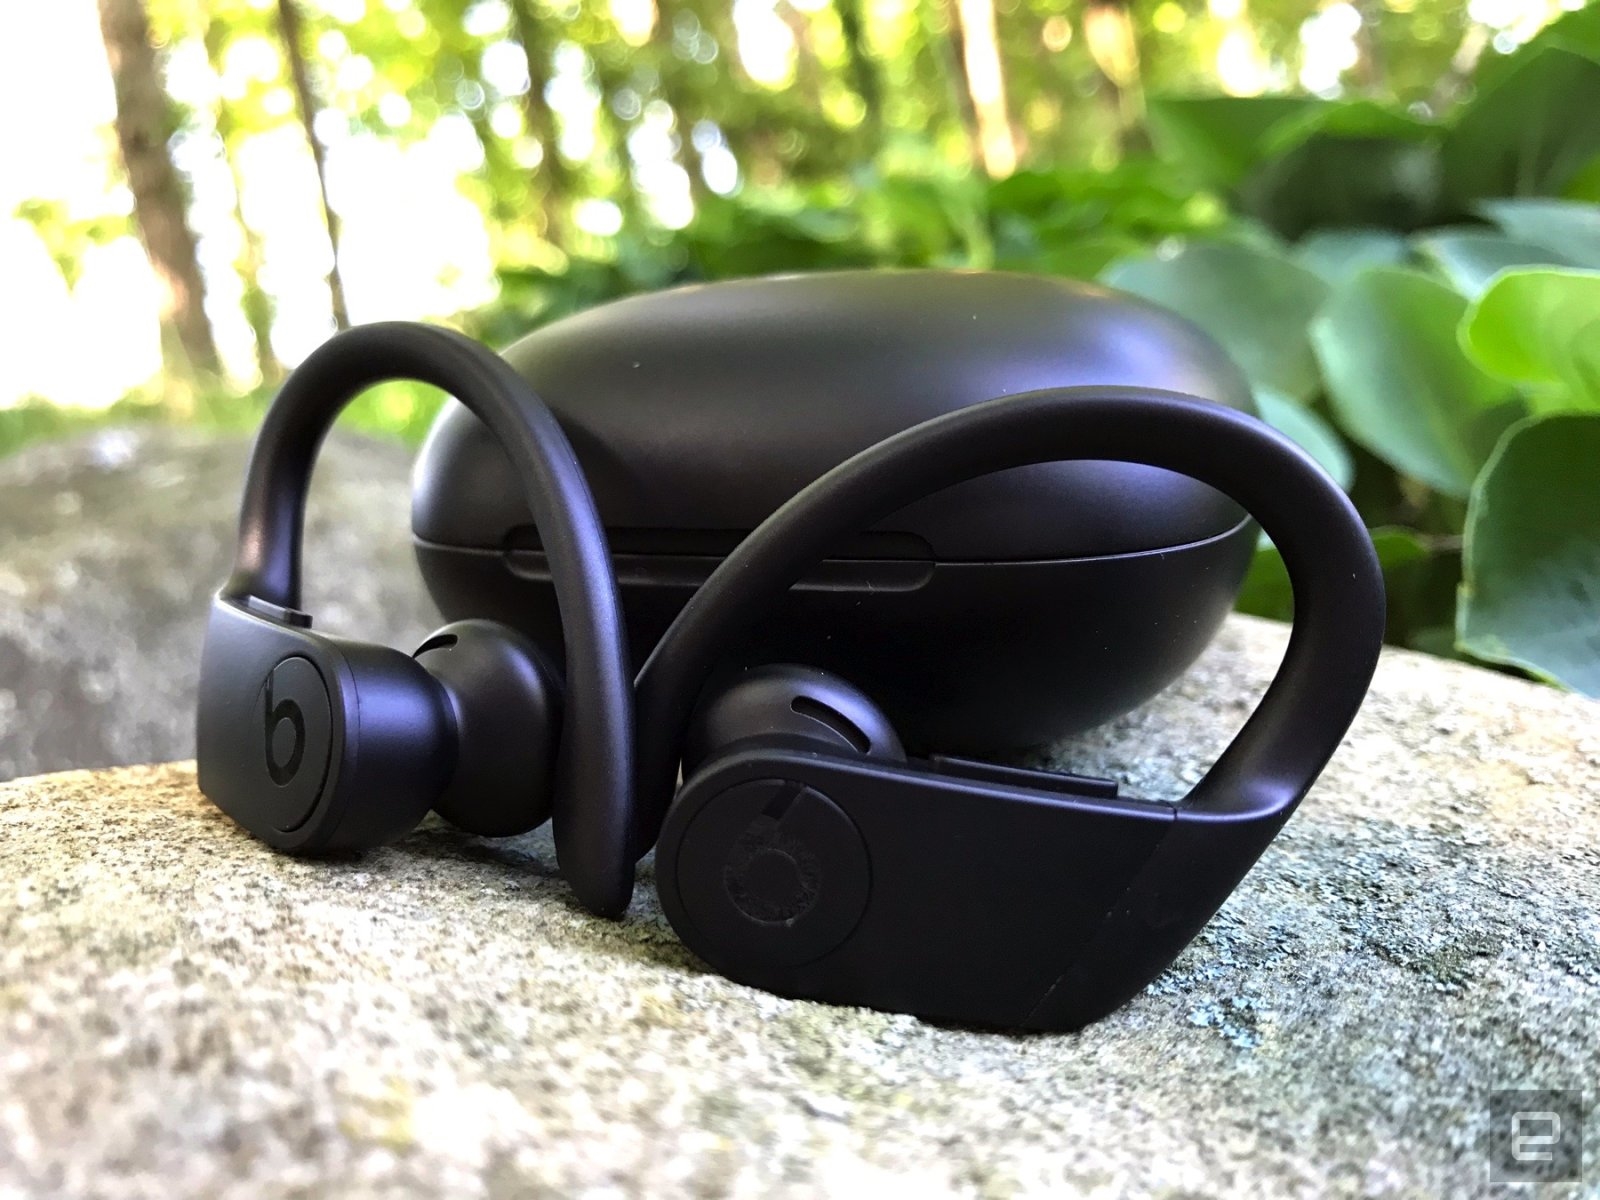 Powerbeats Pro review: The best-sounding Beats headphones yet